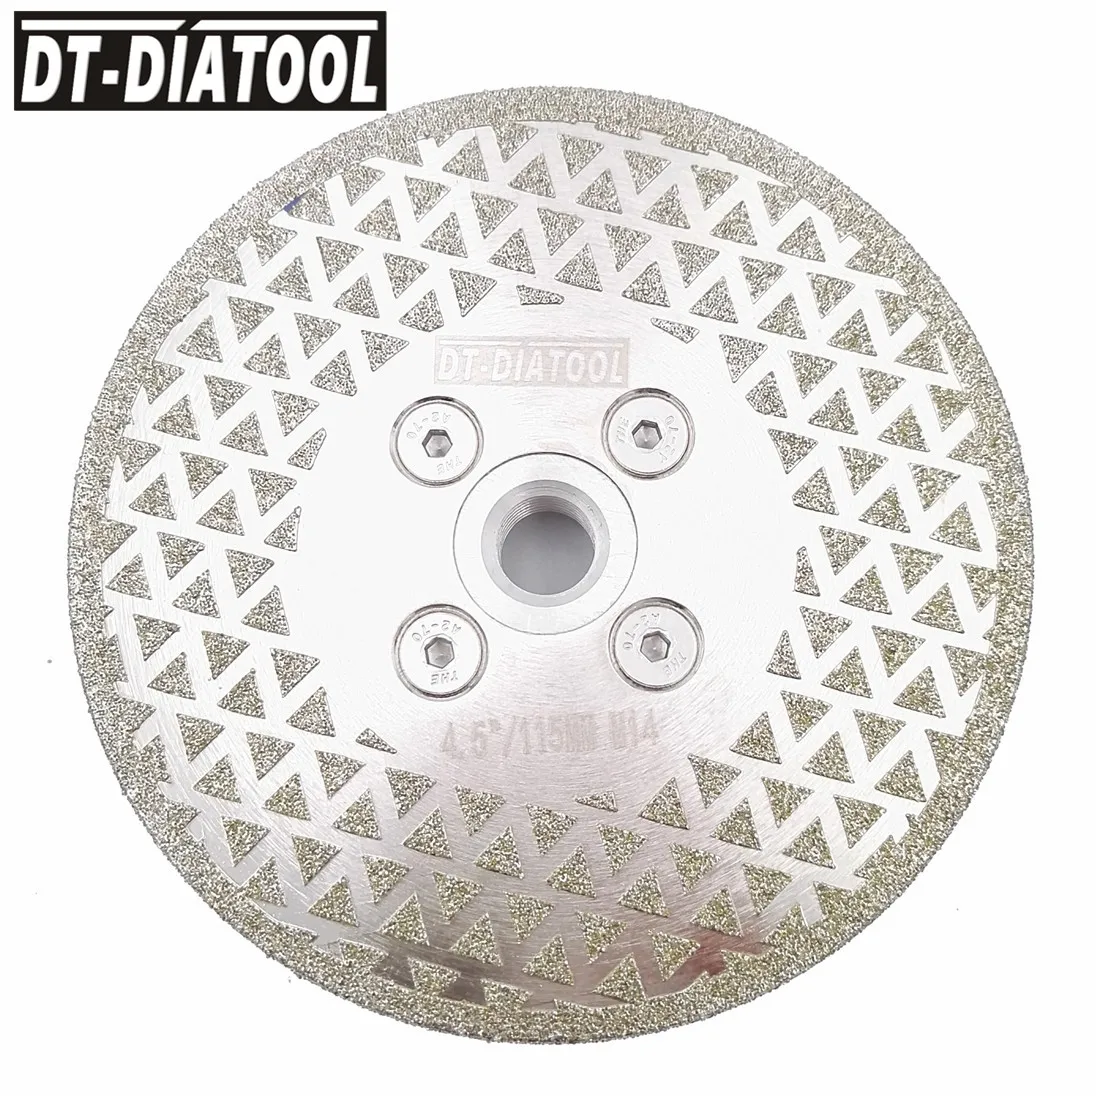 DT-DIATOOL 1 шт. гальванические алмазные режущие и шлифовальные лезвия M14 фланец для плитки мрамора односторонняя алмазная пила с покрытием